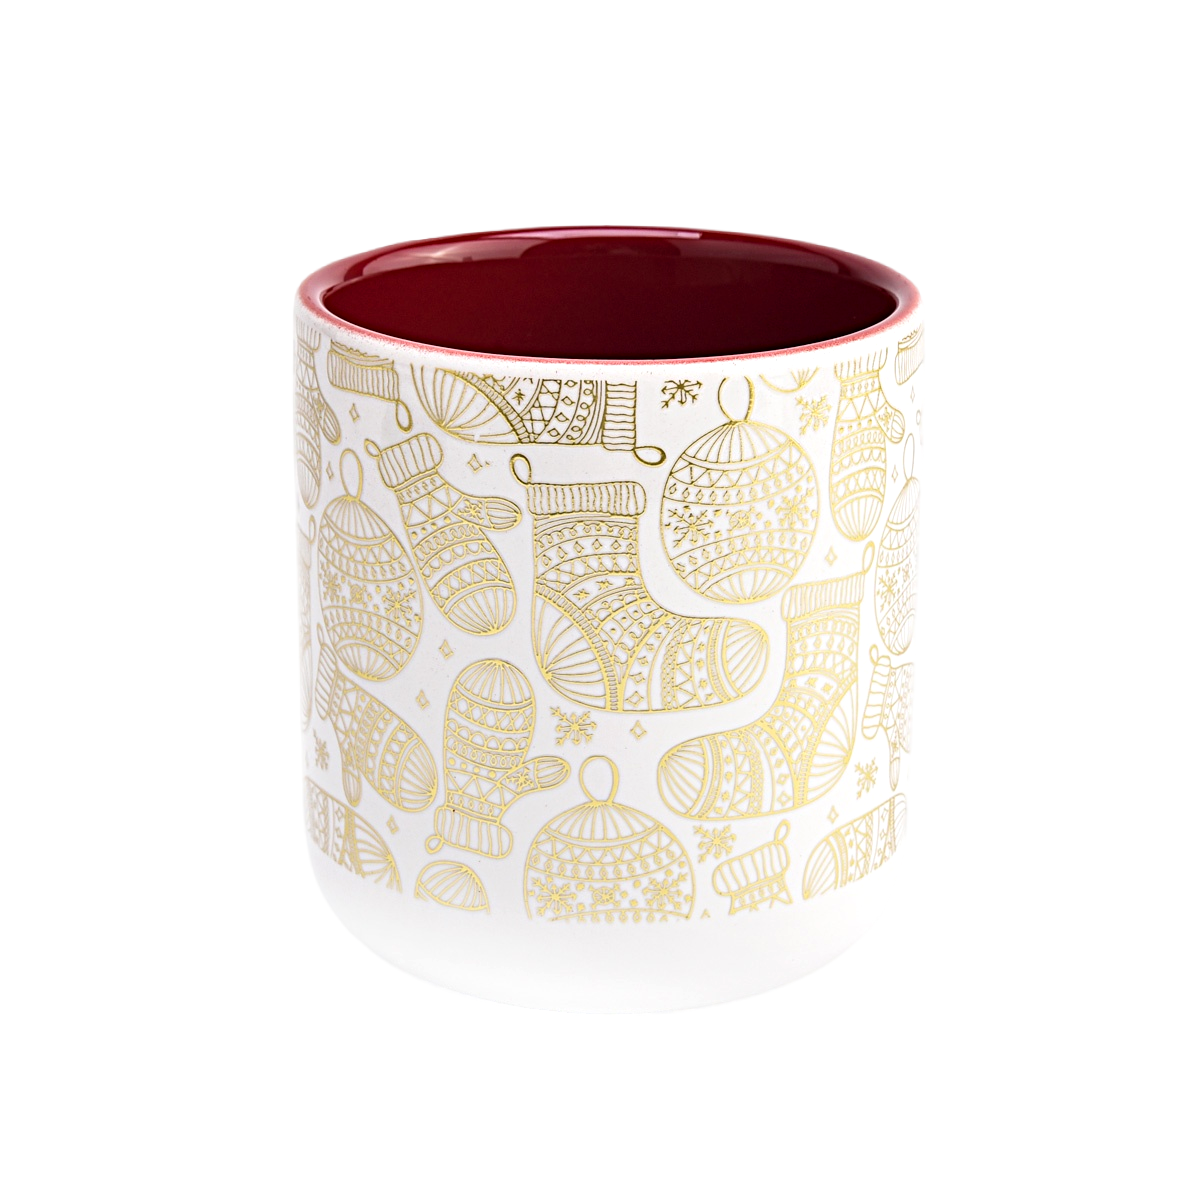 Unica applique natalizia che stampa lussuosi barattoli di candele in ceramica vuoti